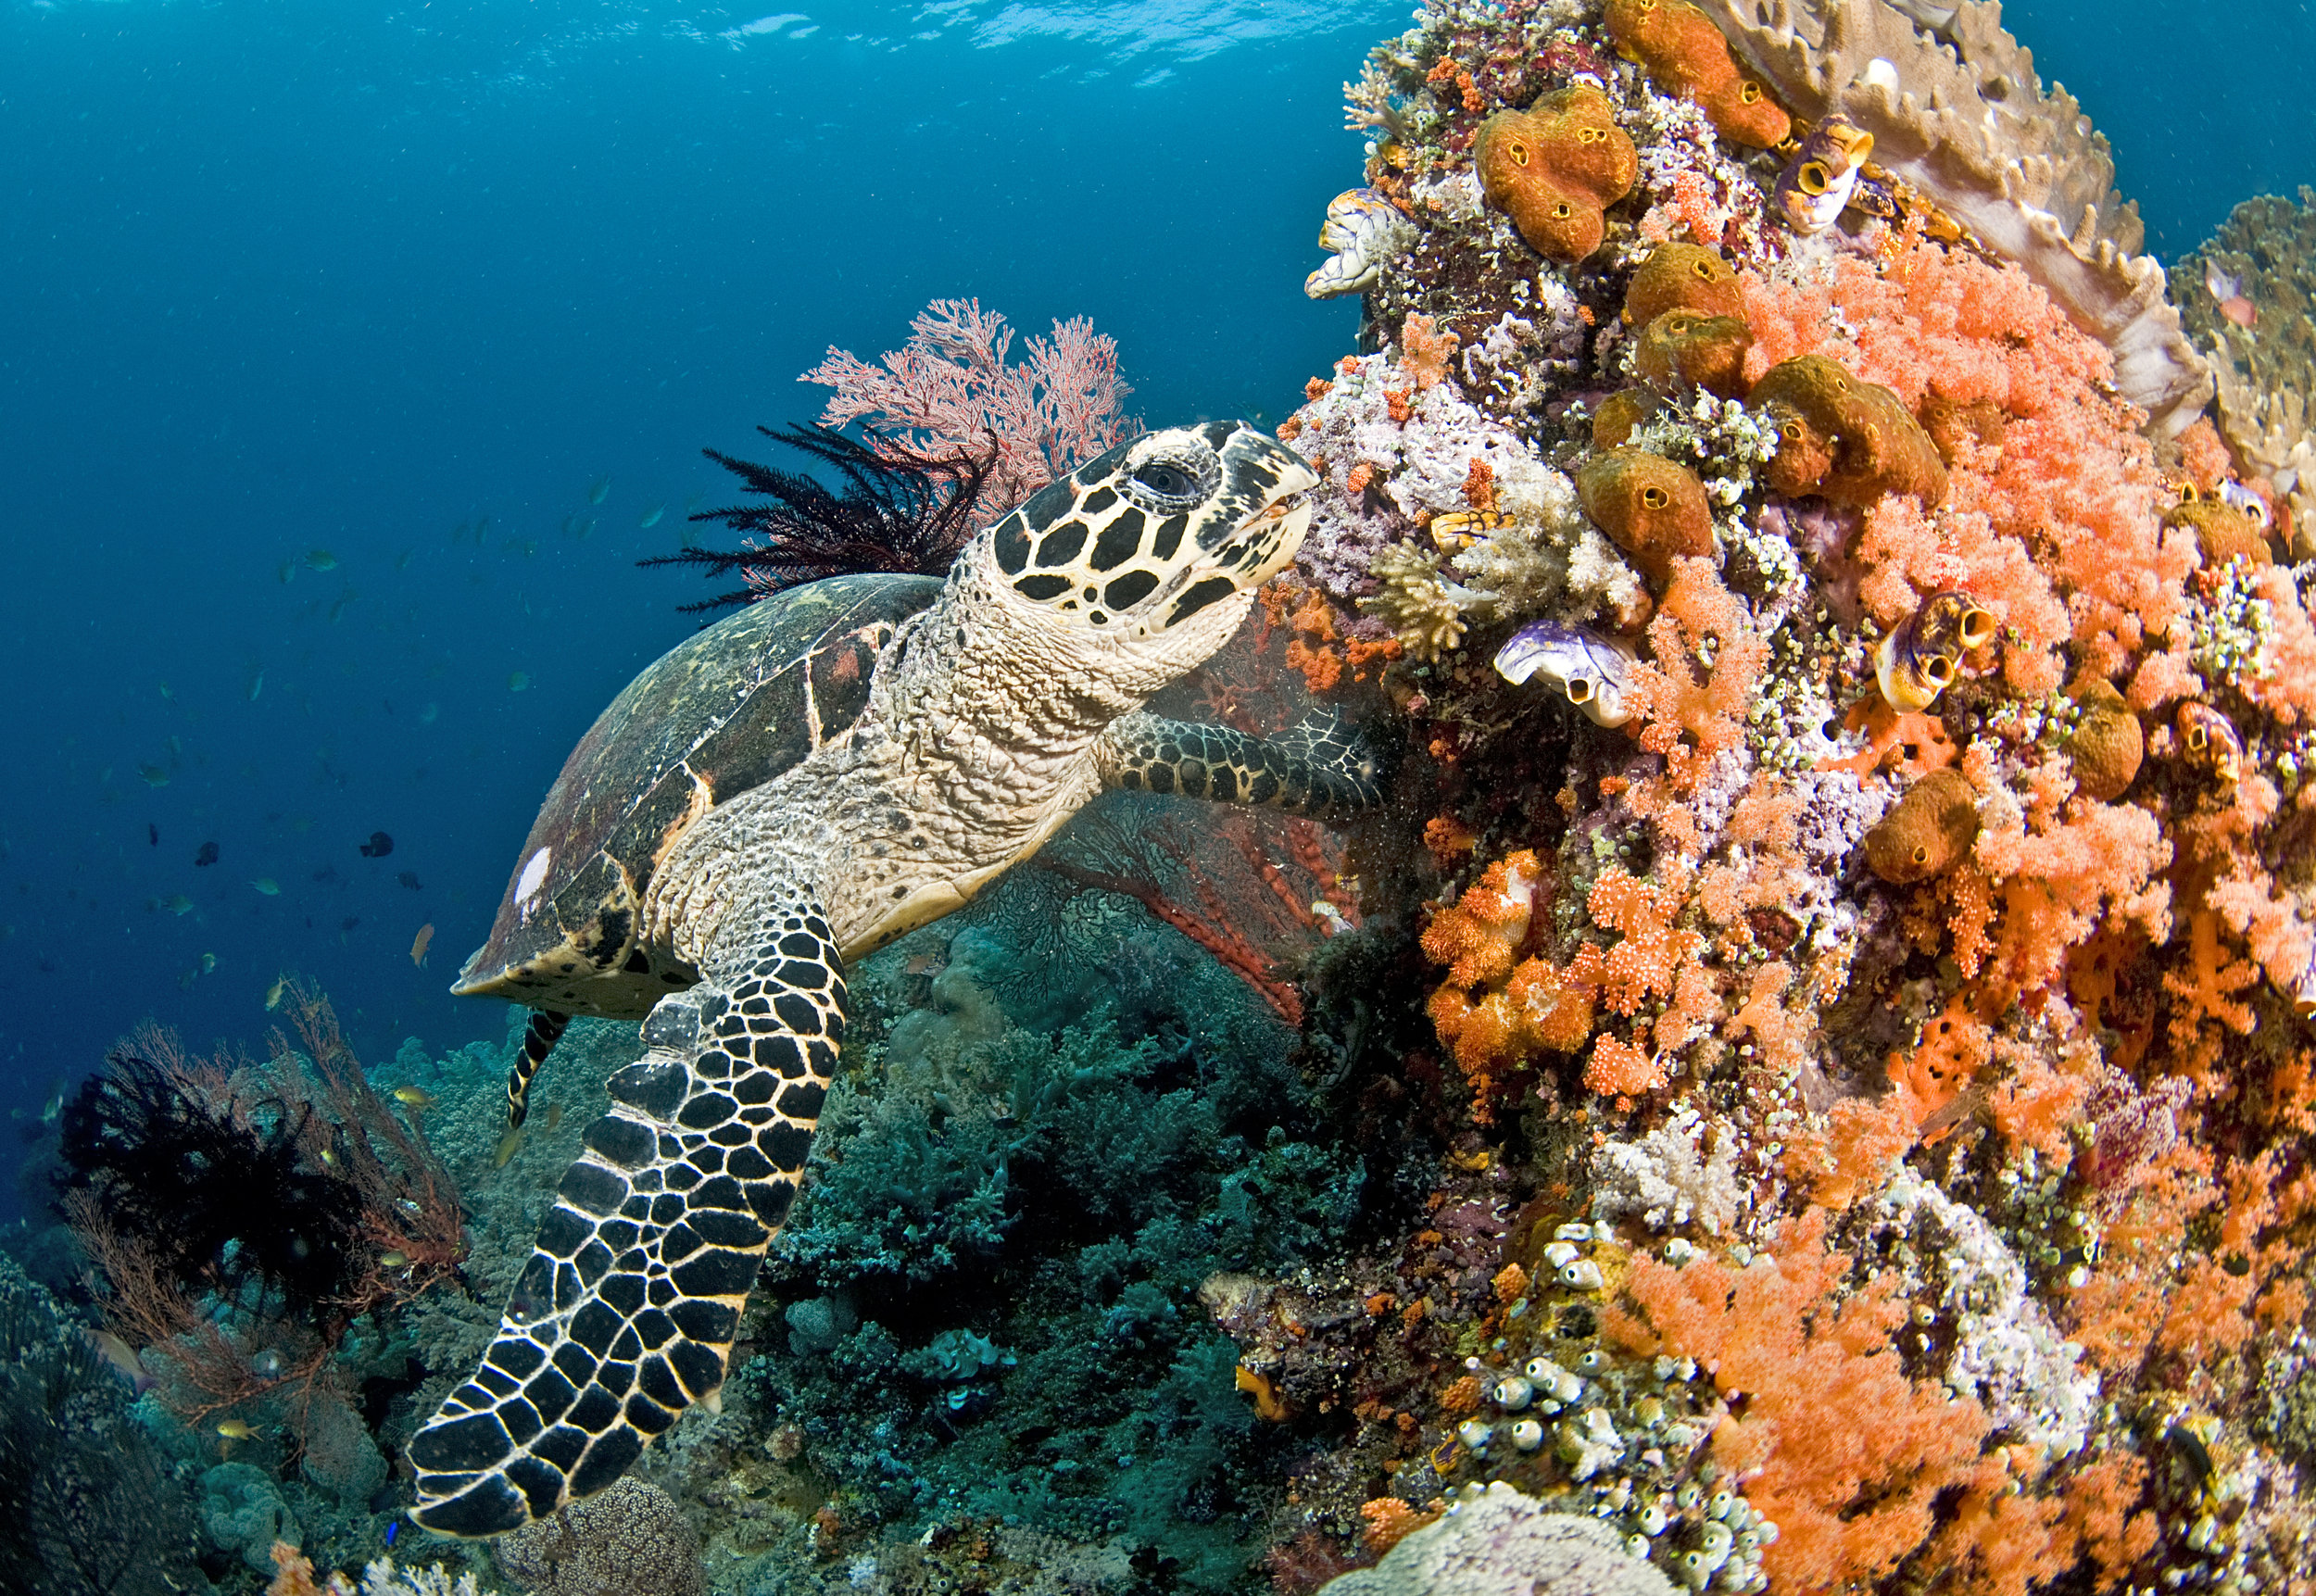  © Jayne Jenkins / Coral Reef Image Bank 